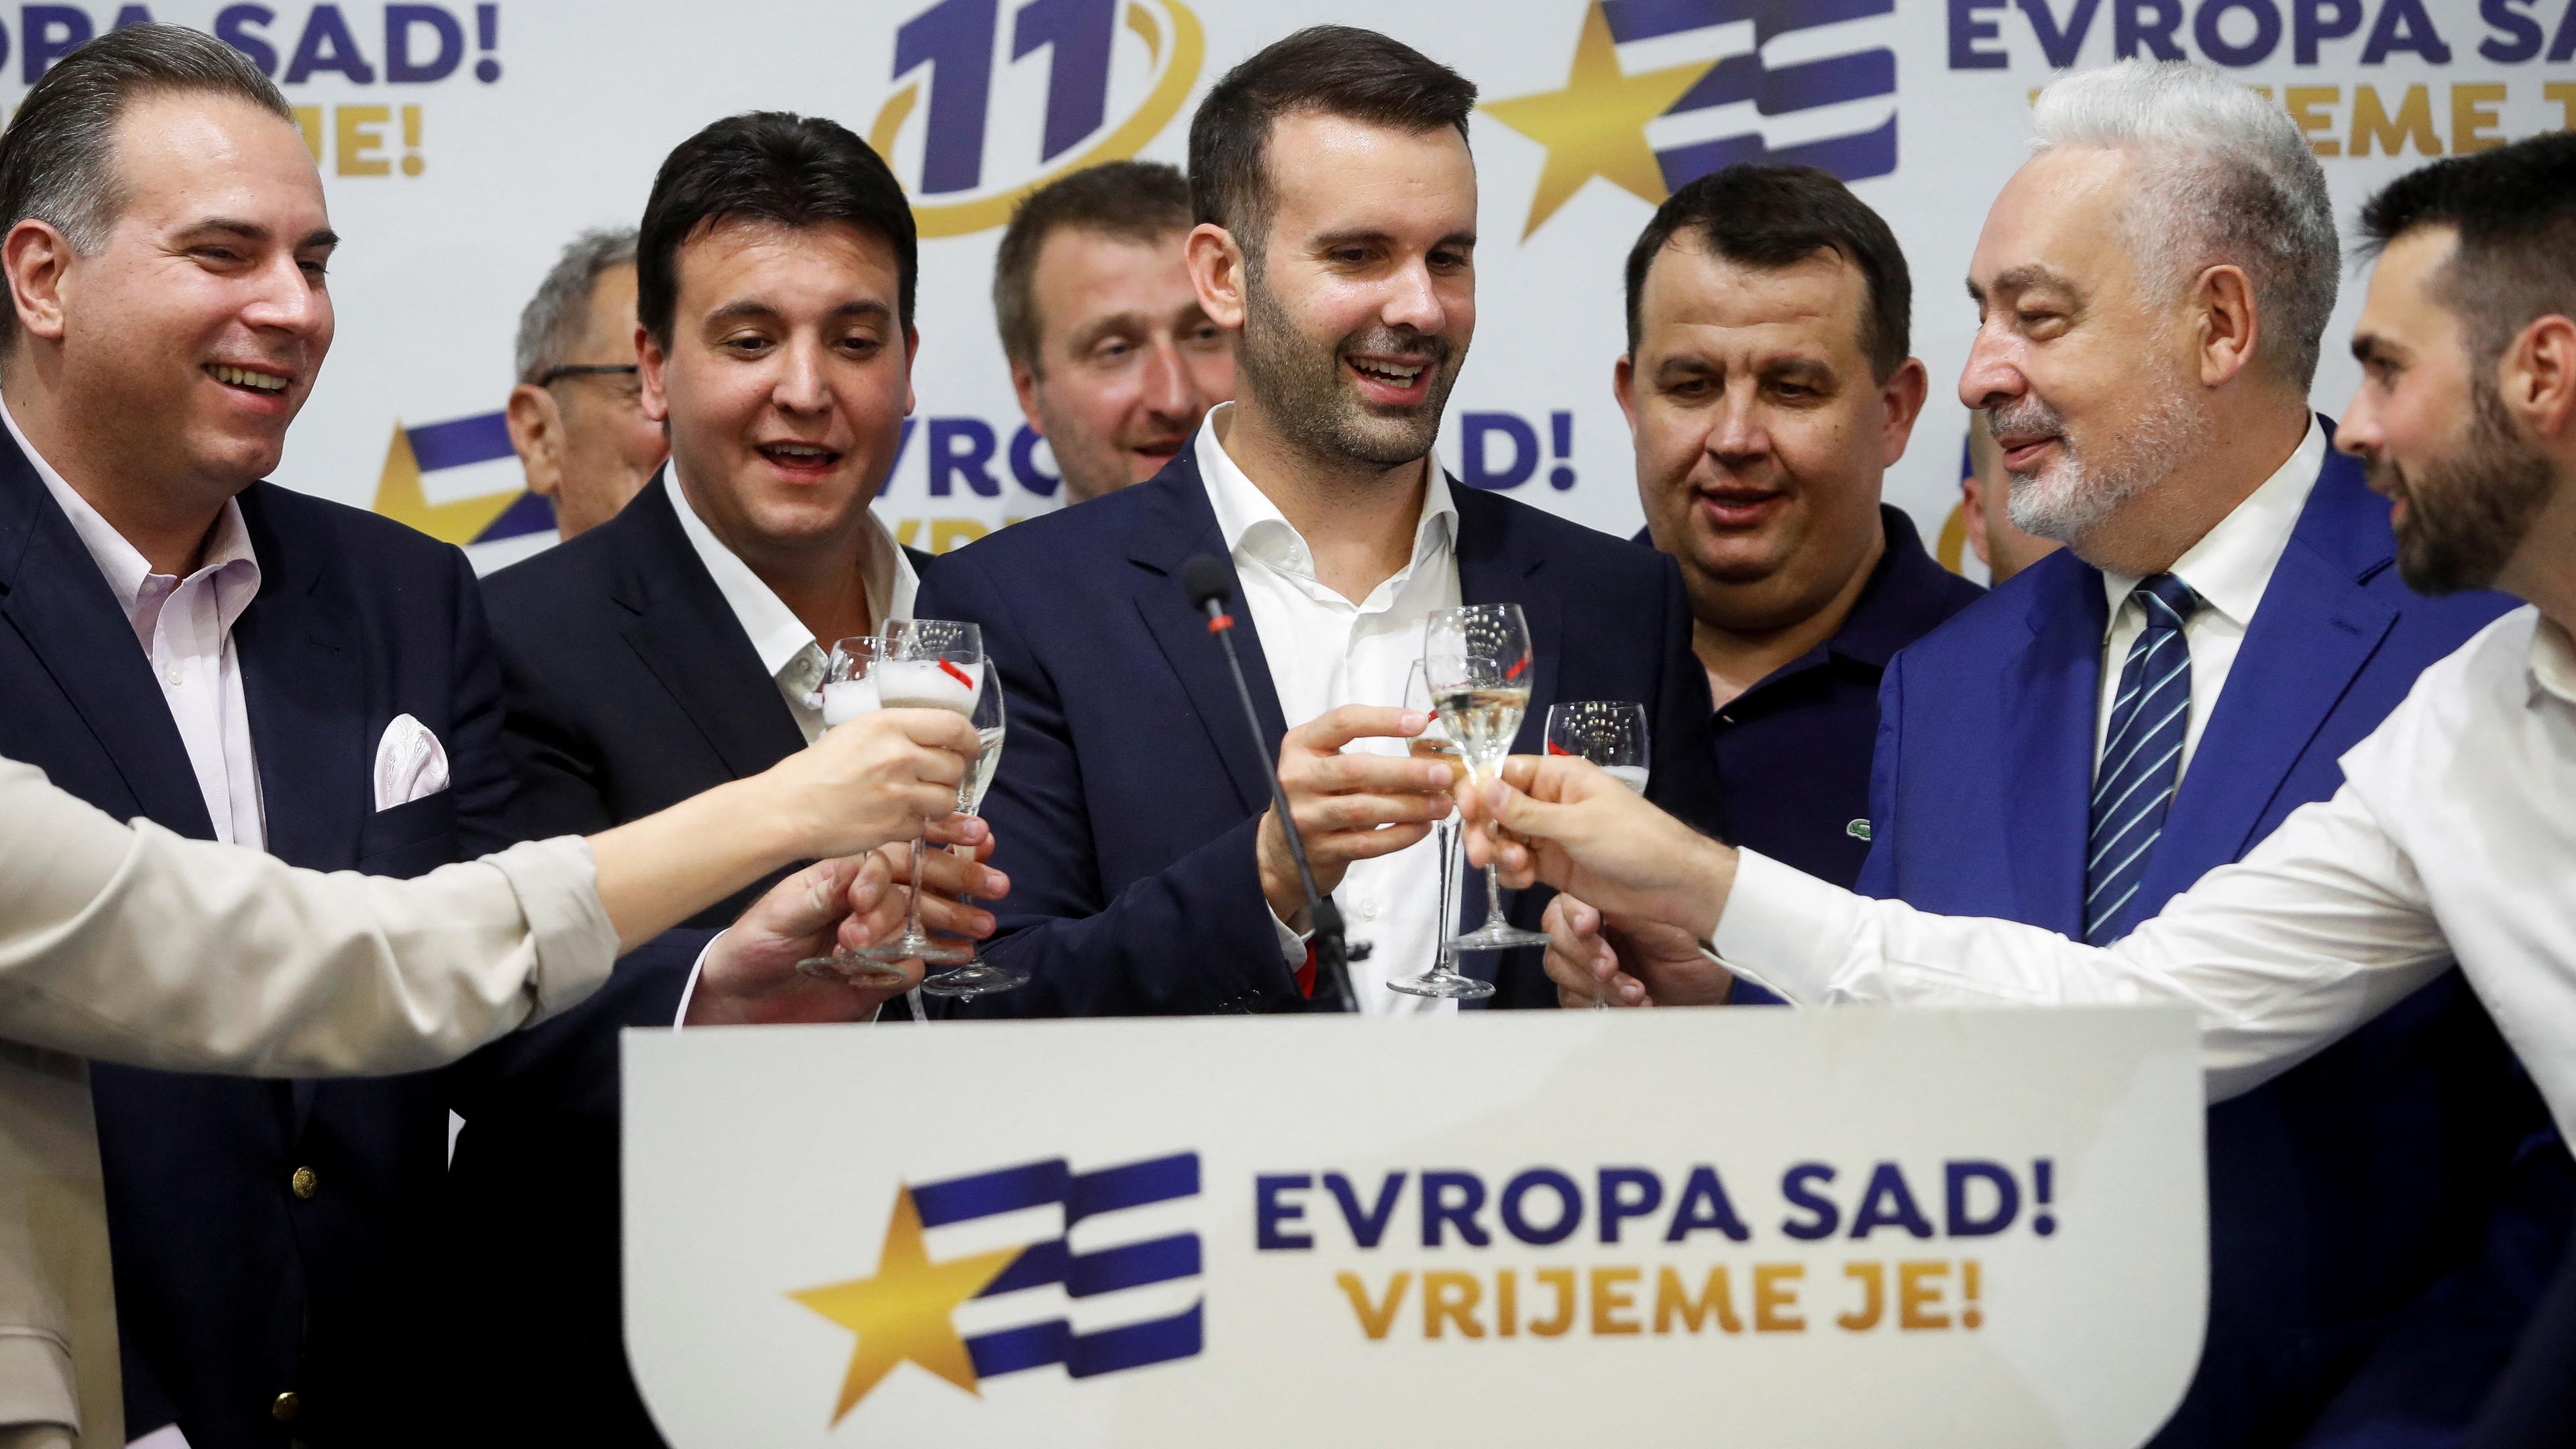 Milojko Spajic und Unterstützer stoßen an, im Hintergrund ist das Logo der Partei "Europa Jetzt!" (PES) zu sehen.